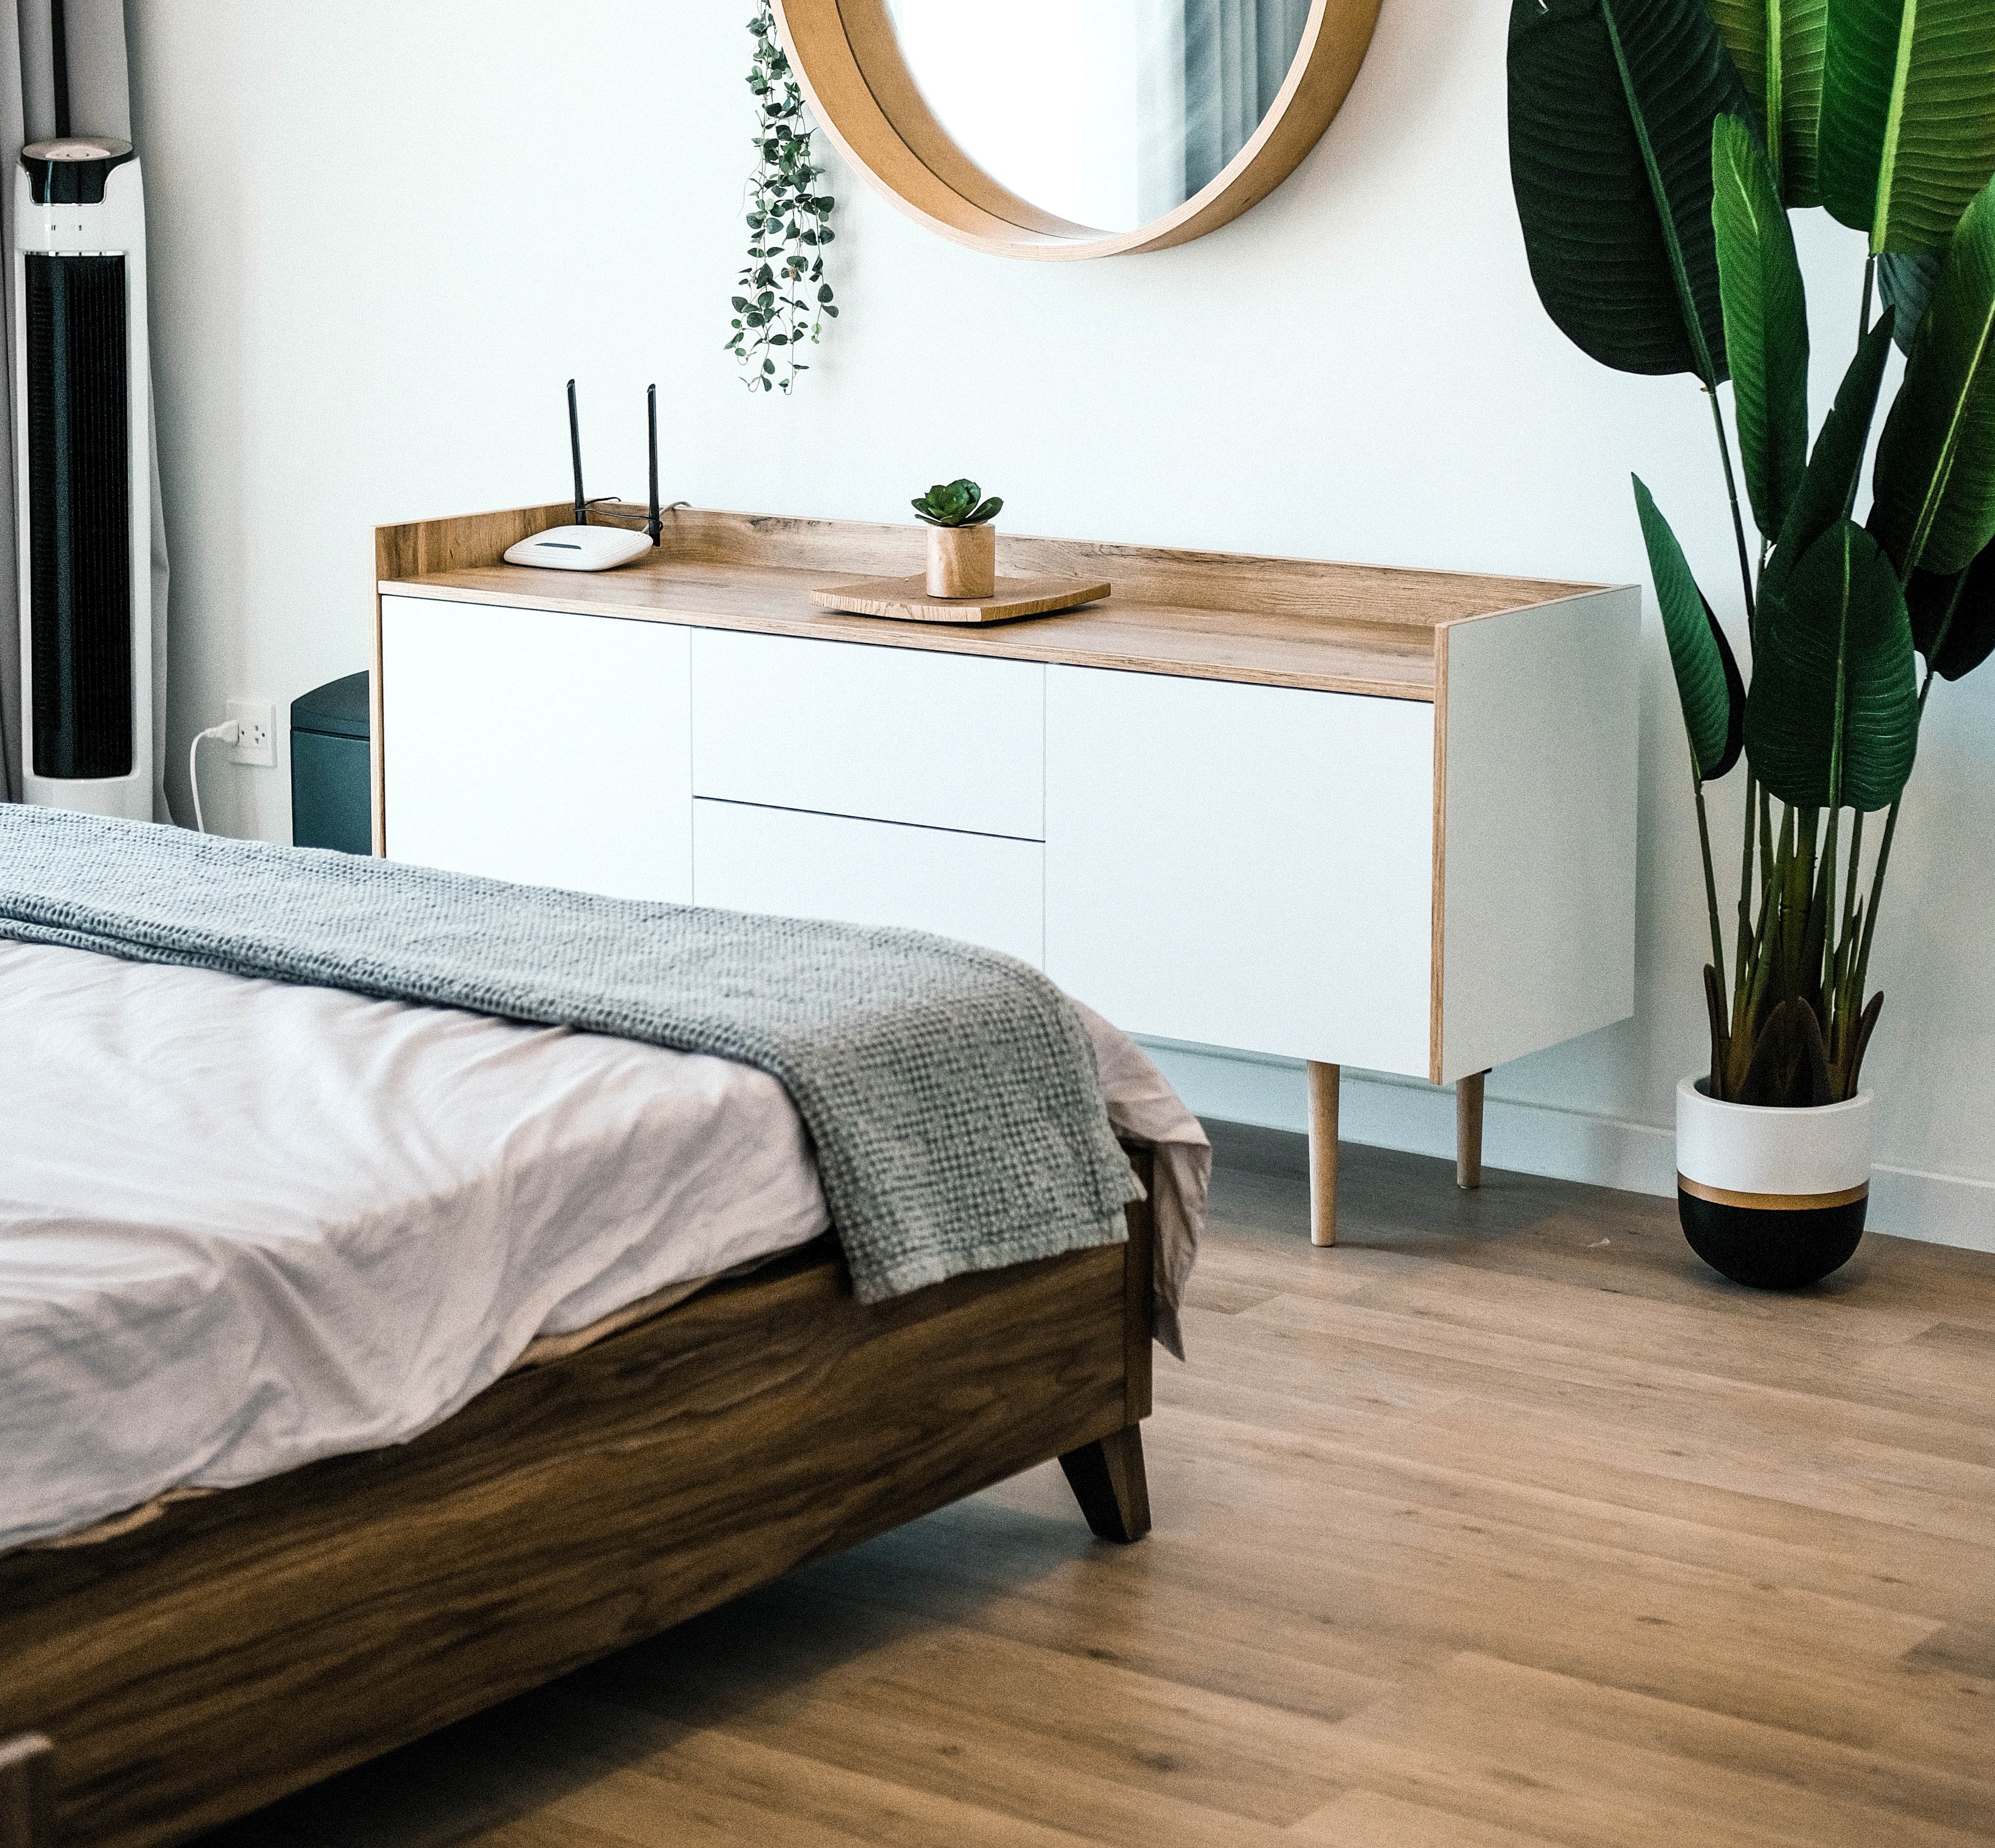 Bedroom with wooden flooring